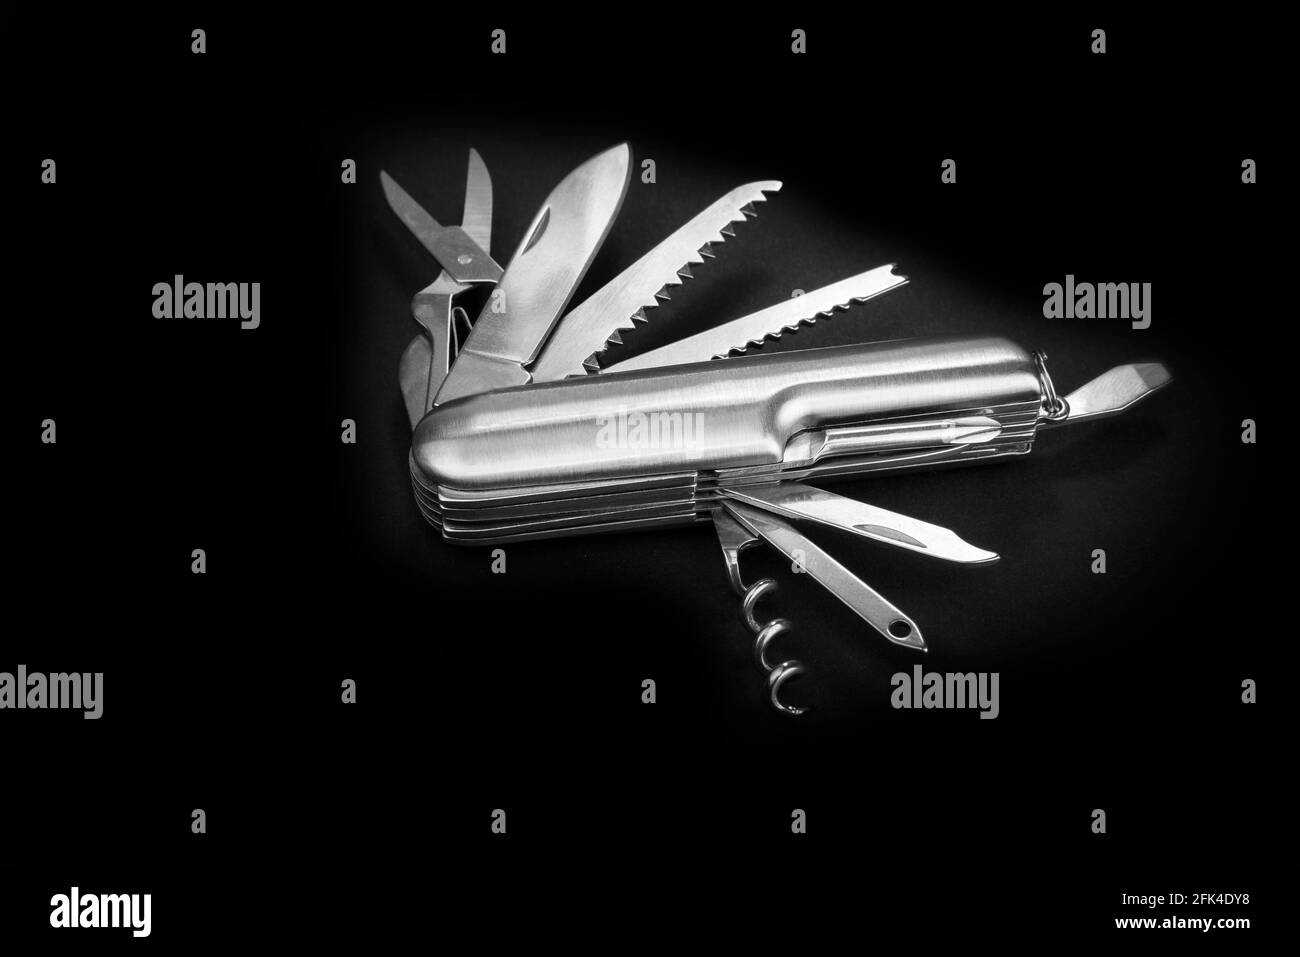 Schweizer viele Aufgabe Armee Messer. Taschenmesser für mehrere Werkzeuge. Stockfoto